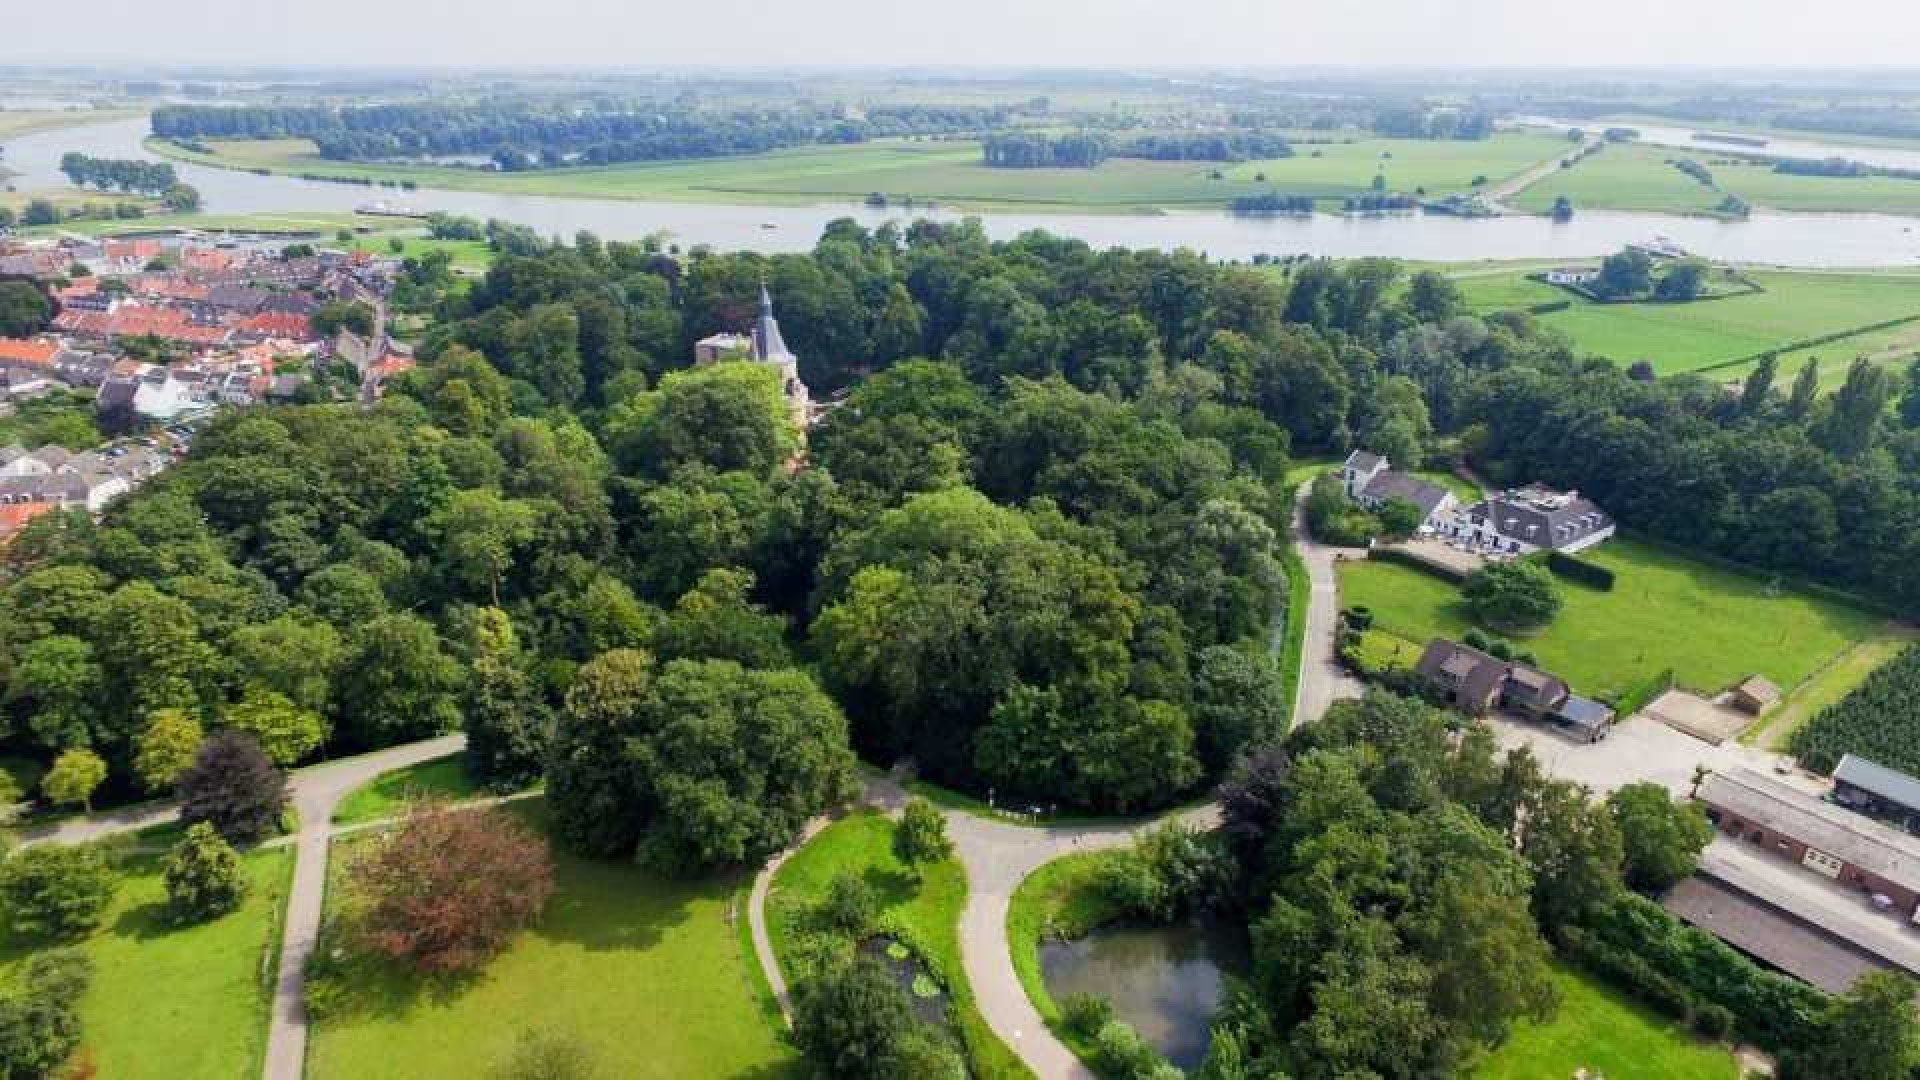 Prinses Irene verkoopt haar landhuis in Wijk bij Duurstede. Zie foto's